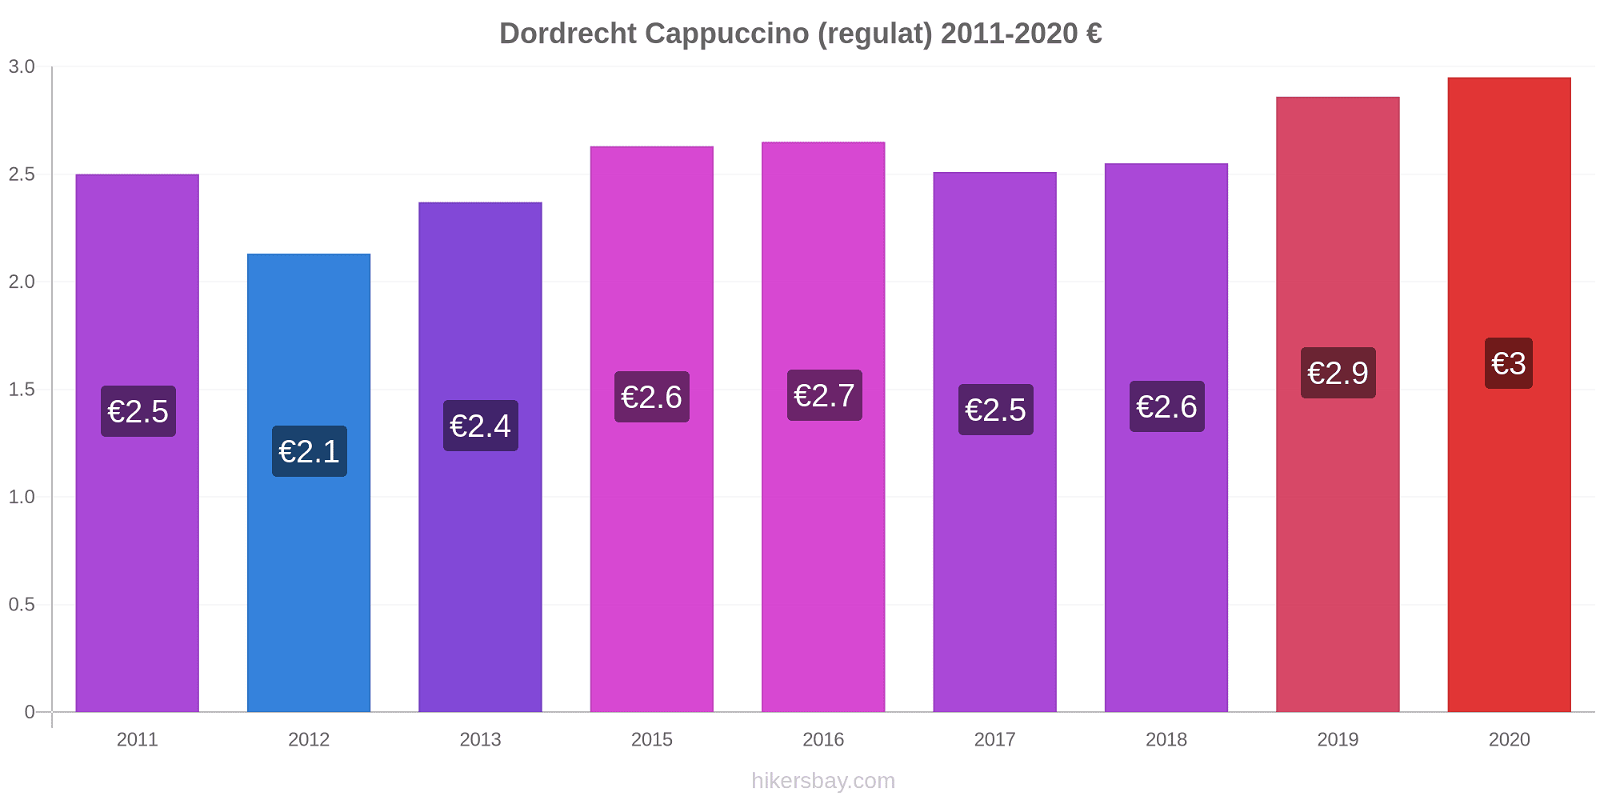 Dordrecht modificări de preț Cappuccino (regulat) hikersbay.com